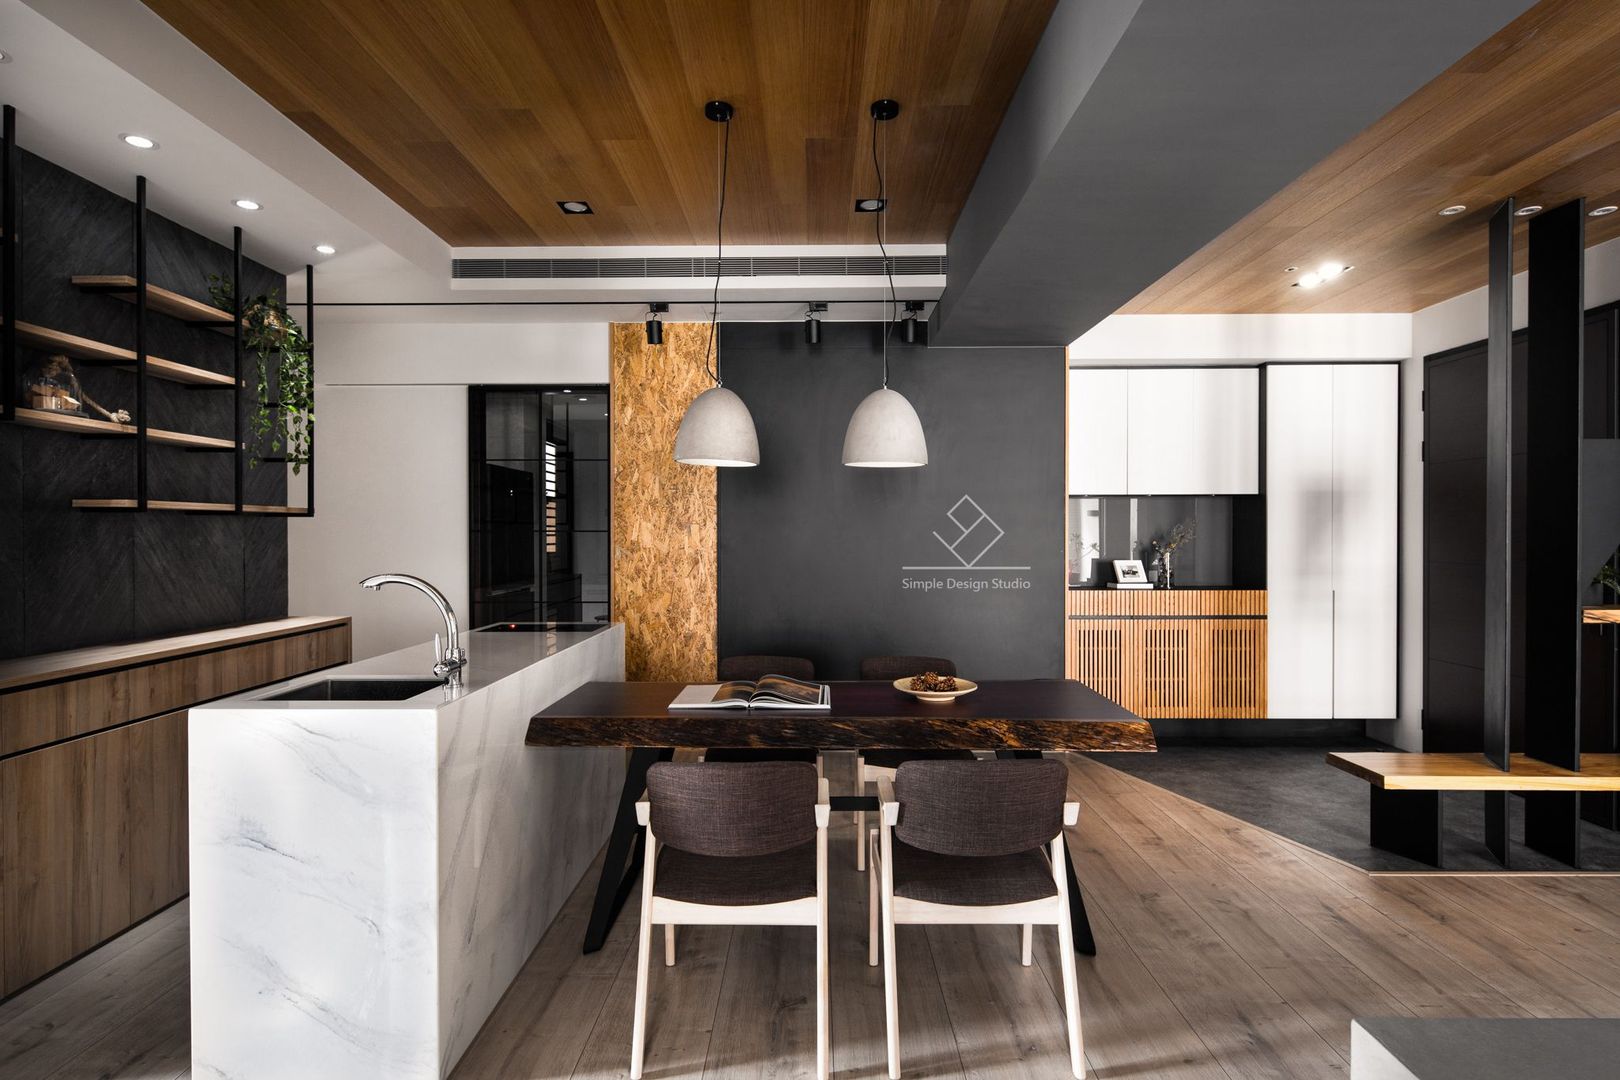 竹北-翰林富苑-S&C秘境, 極簡室內設計 Simple Design Studio 極簡室內設計 Simple Design Studio Salas de jantar modernas